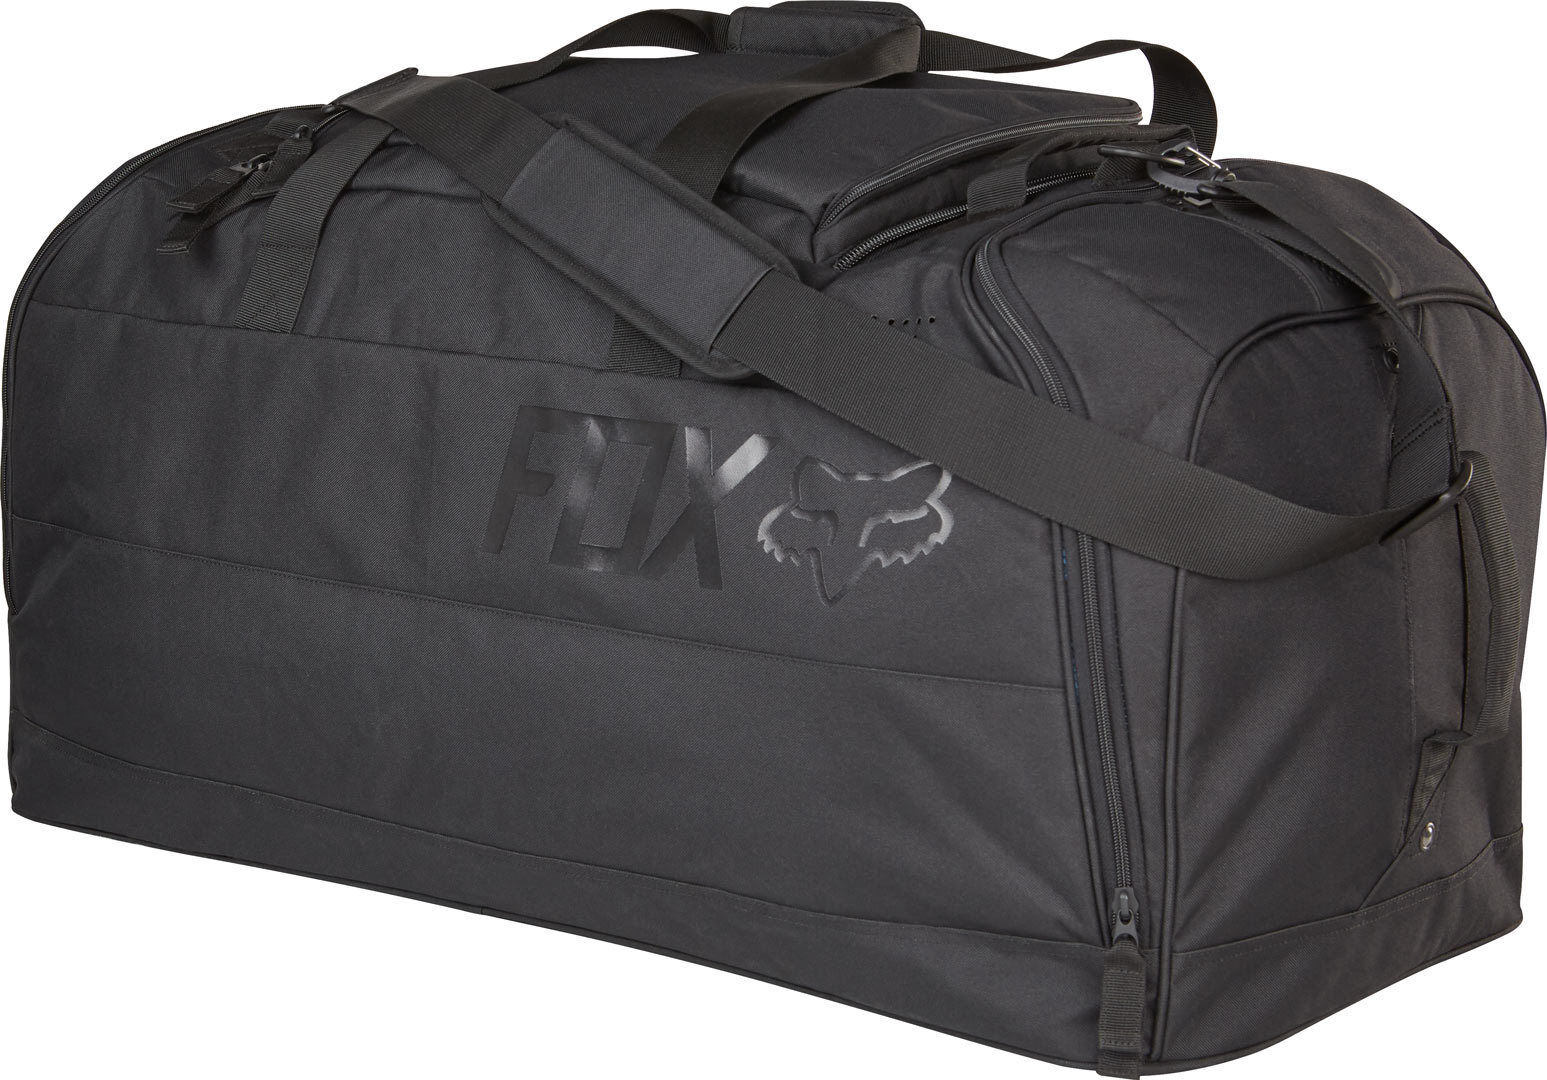 Fox Podium 2017 Travel Bag Bolsa de equipo - Negro (un tamaño)